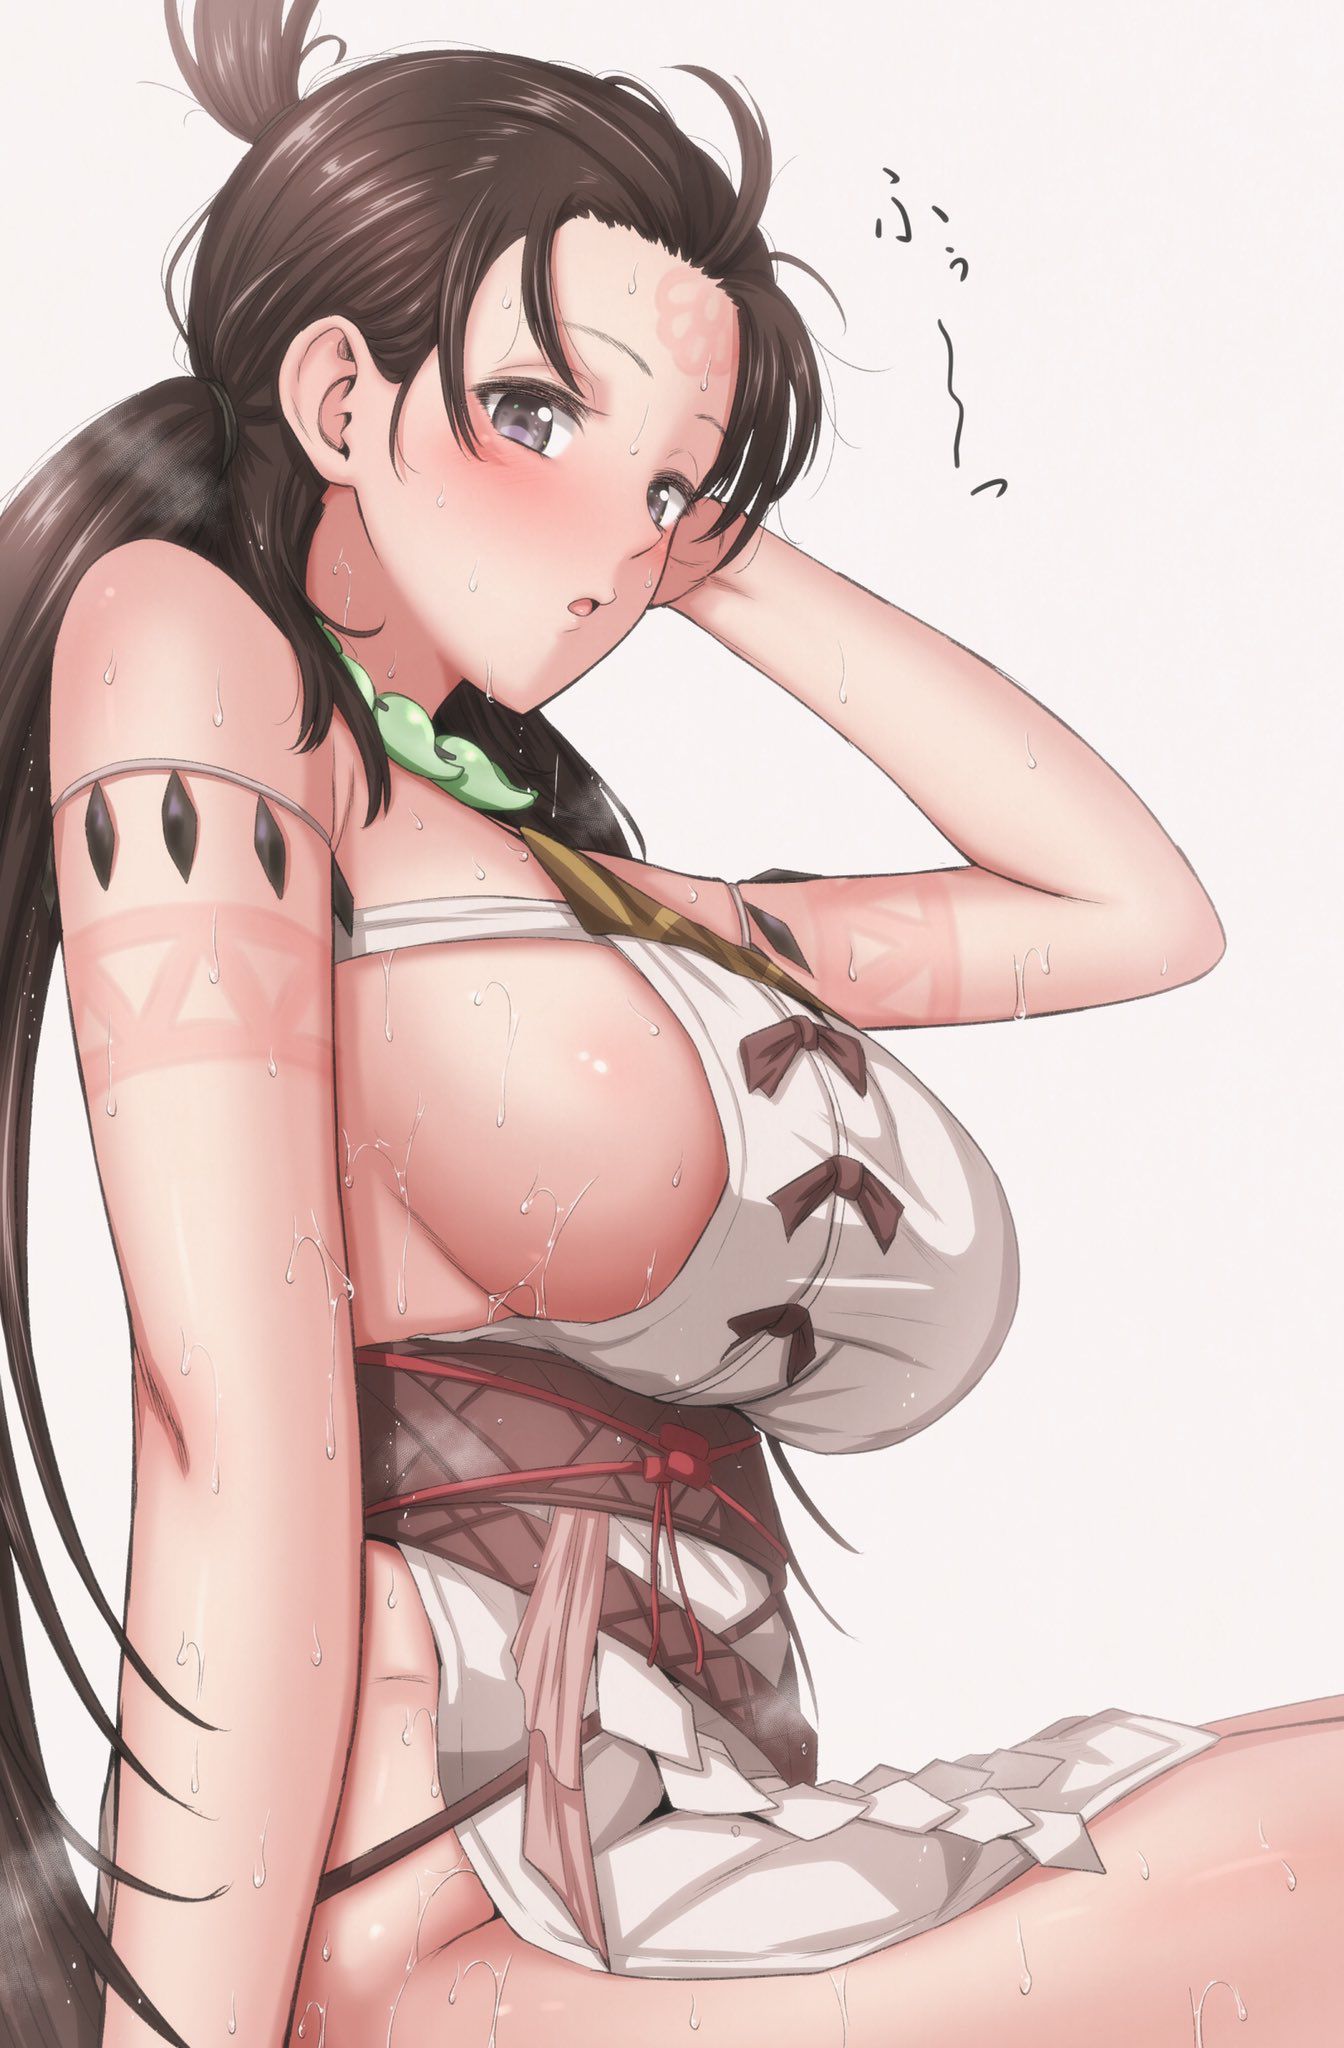 【2nd】 Erotic image of a girl with yoko milk puni puni part 47 29